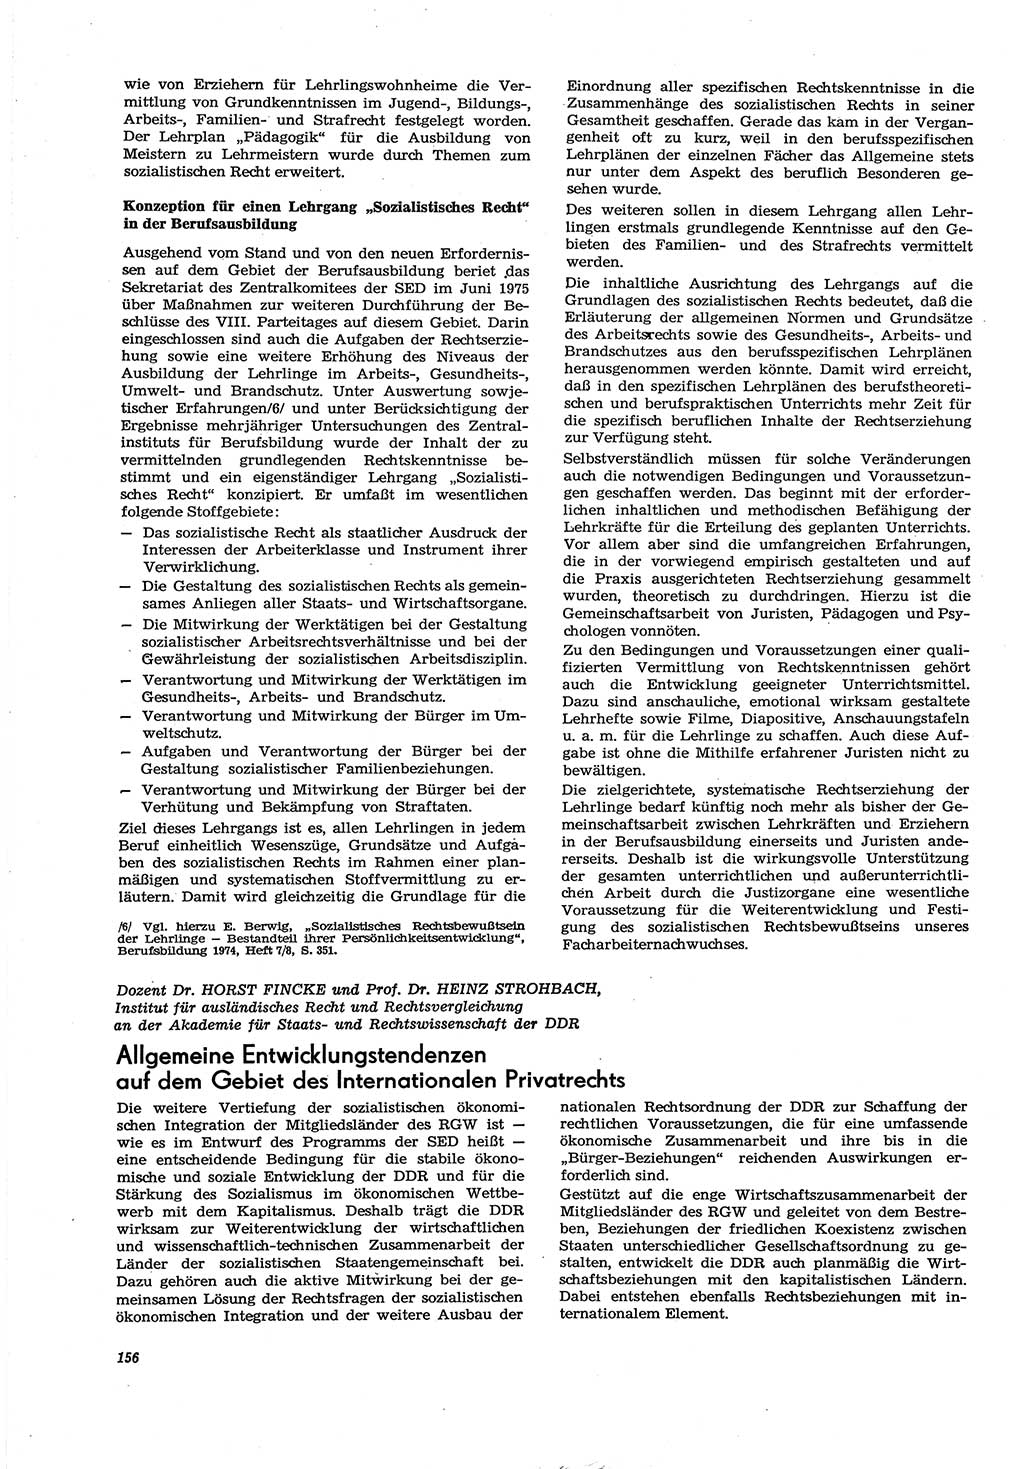 Neue Justiz (NJ), Zeitschrift für Recht und Rechtswissenschaft [Deutsche Demokratische Republik (DDR)], 30. Jahrgang 1976, Seite 156 (NJ DDR 1976, S. 156)